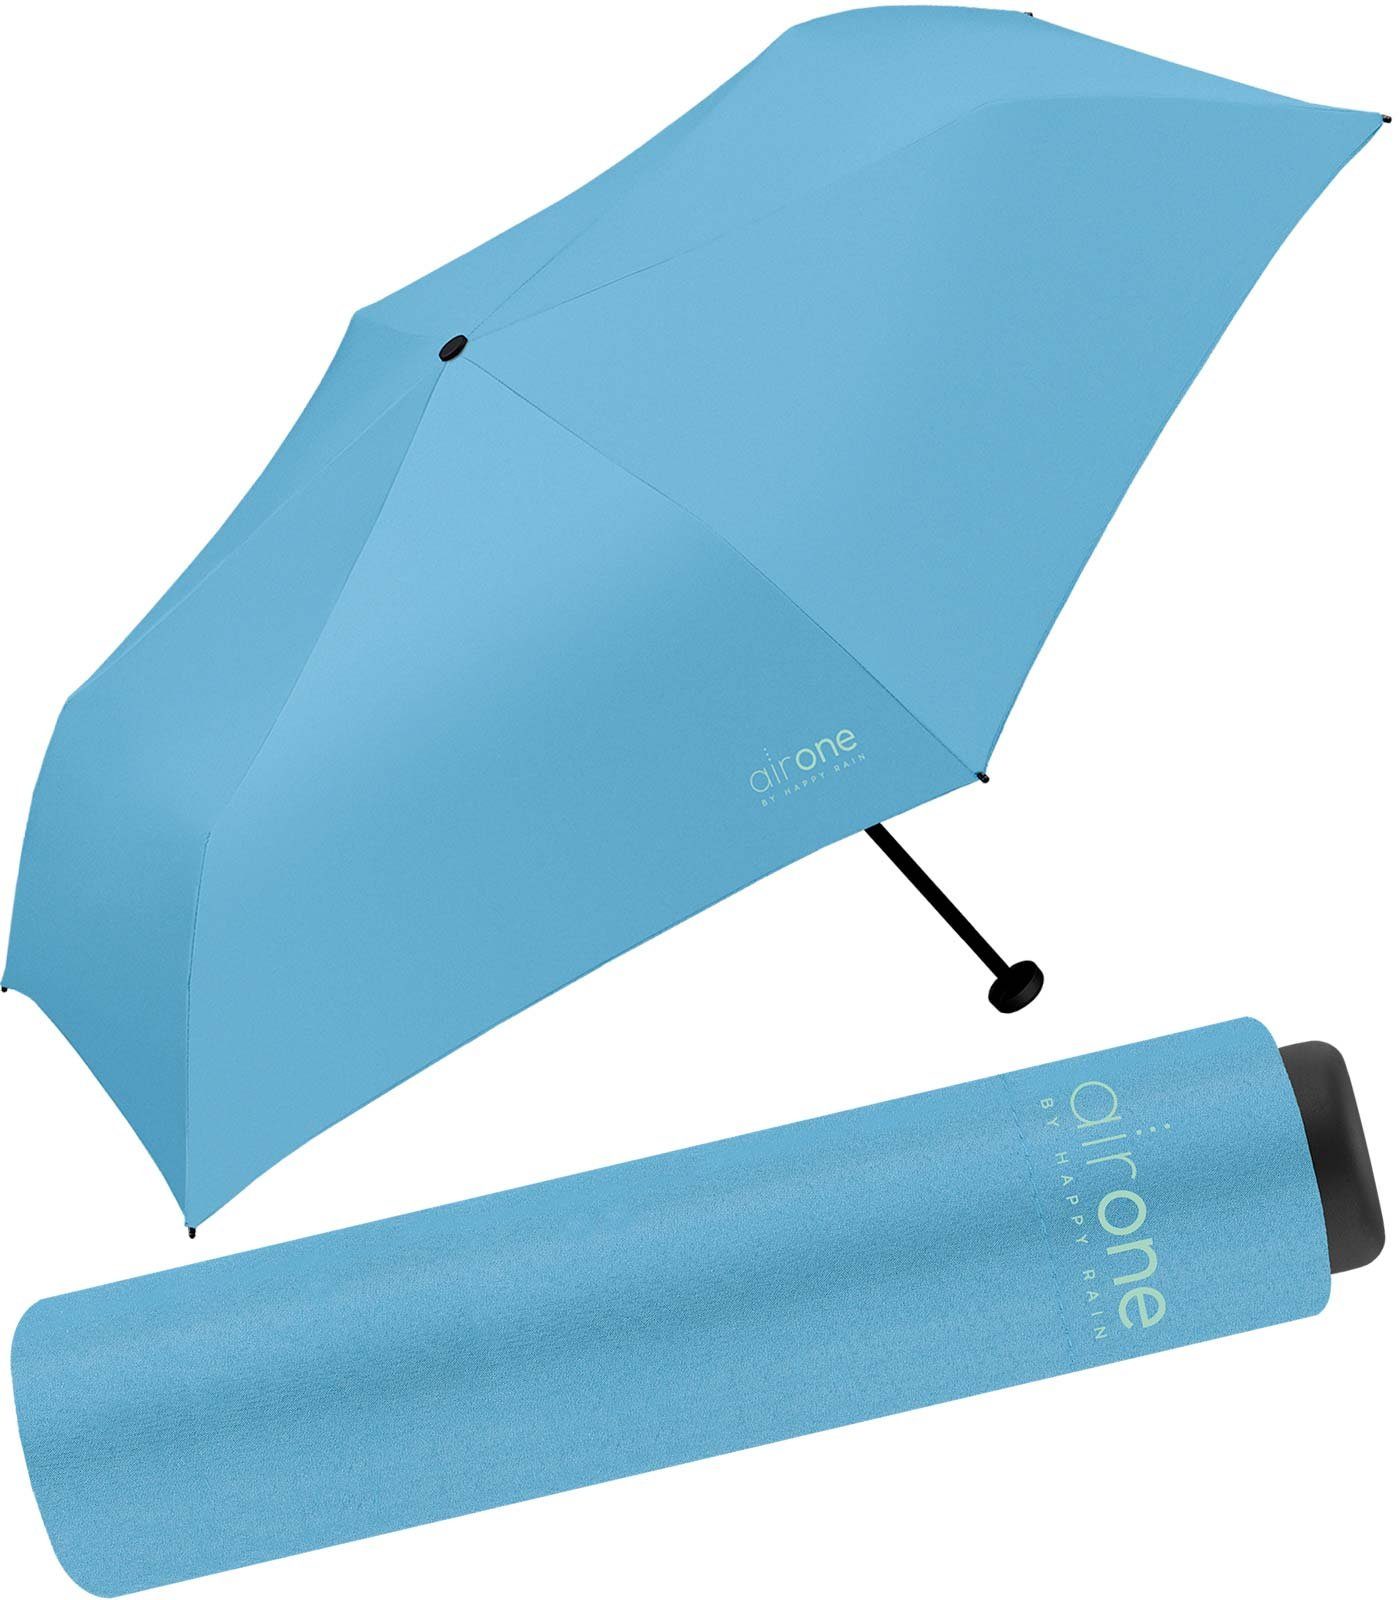 Gramm Minischirm blau superleicht, für 99 - One Mini-Schirm HAPPY leichtester Untewegs perfekt Air RAIN - Taschenregenschirm